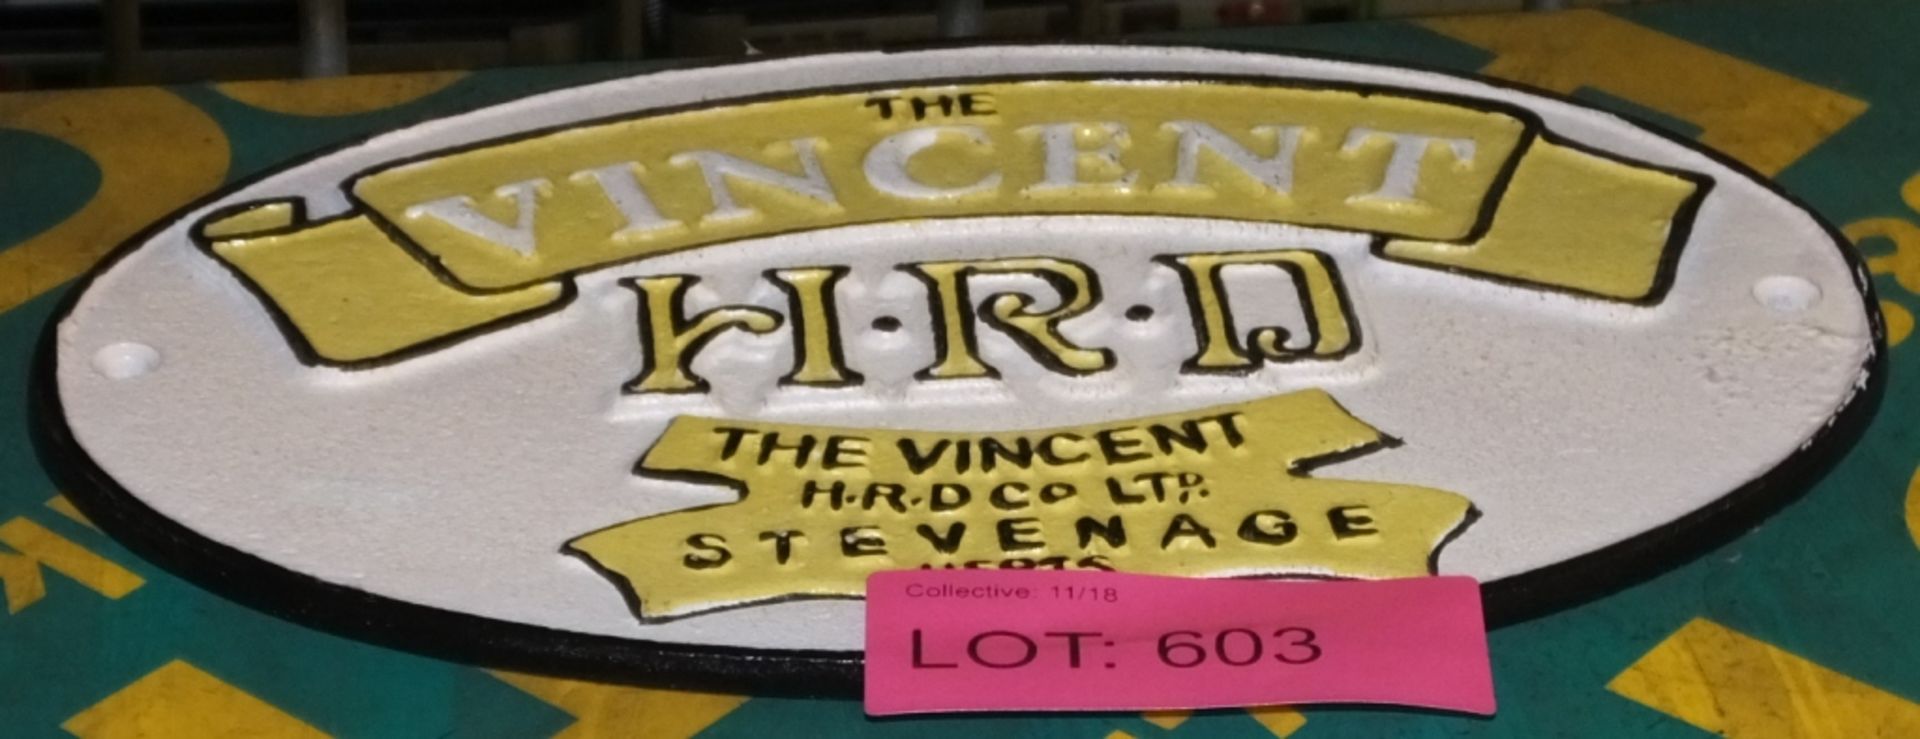 Cast Sign -HRD The Vincent